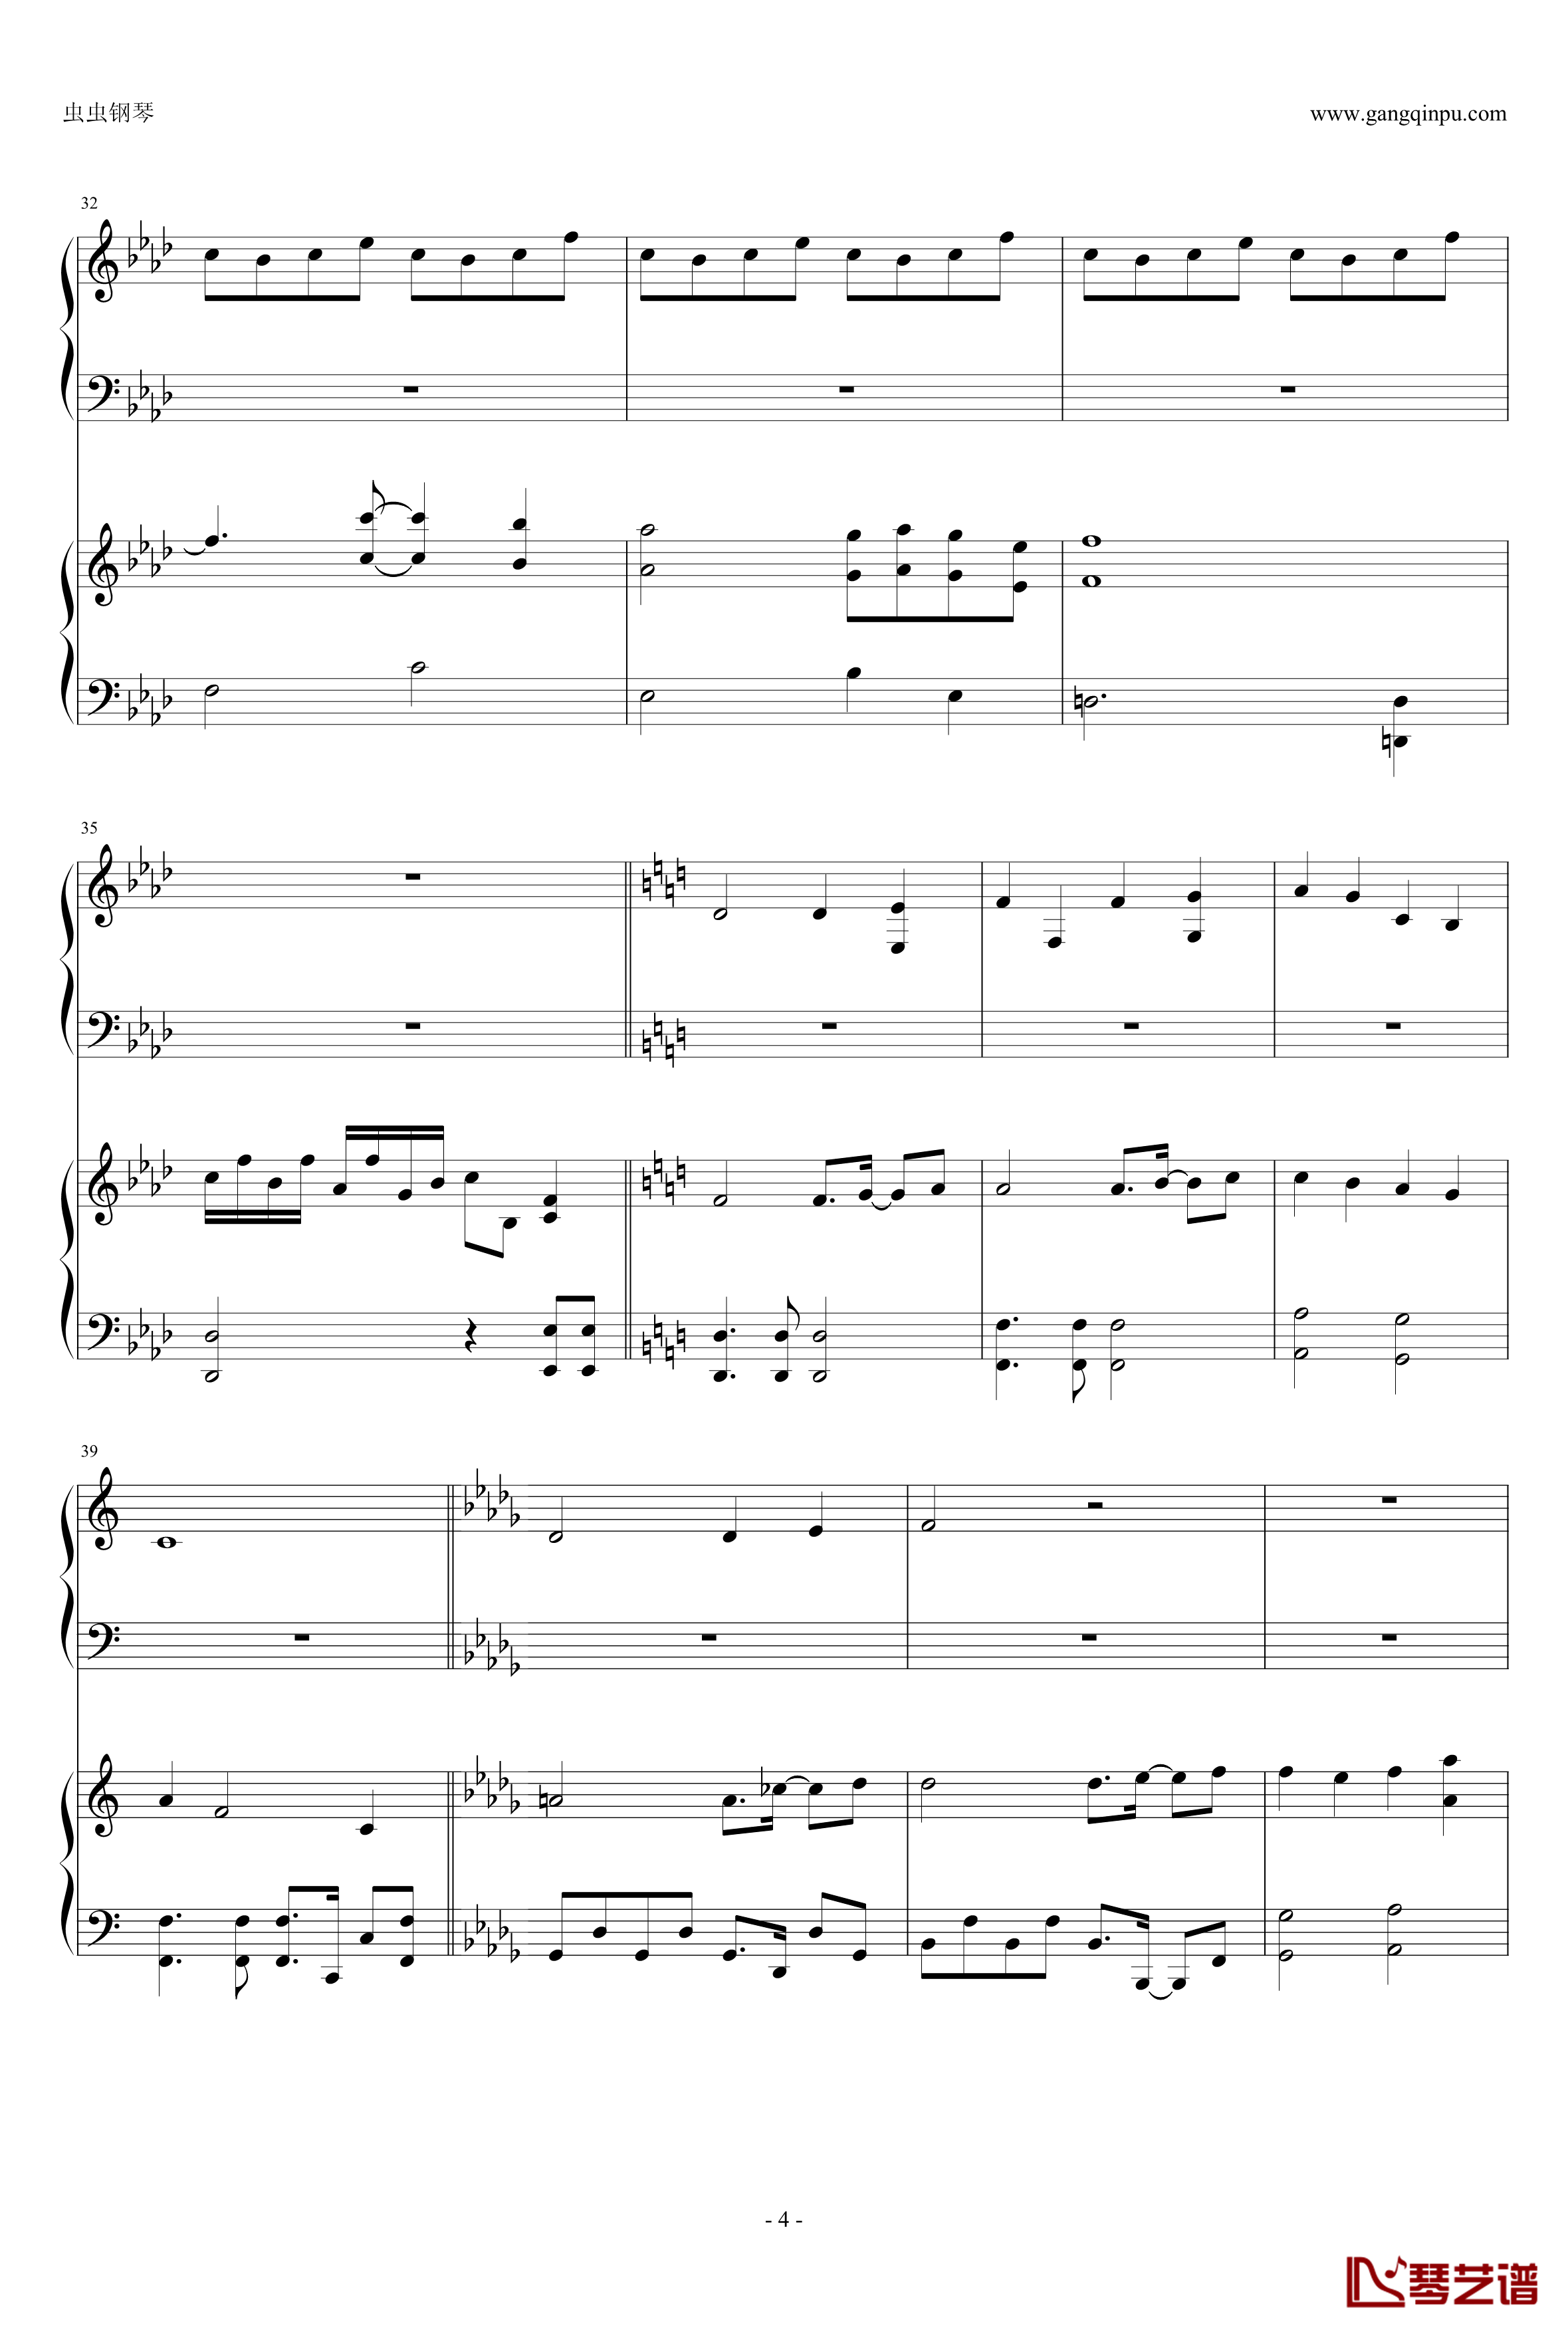 東方連奏曲II Pianoforte钢琴谱-第一部分-东方project4